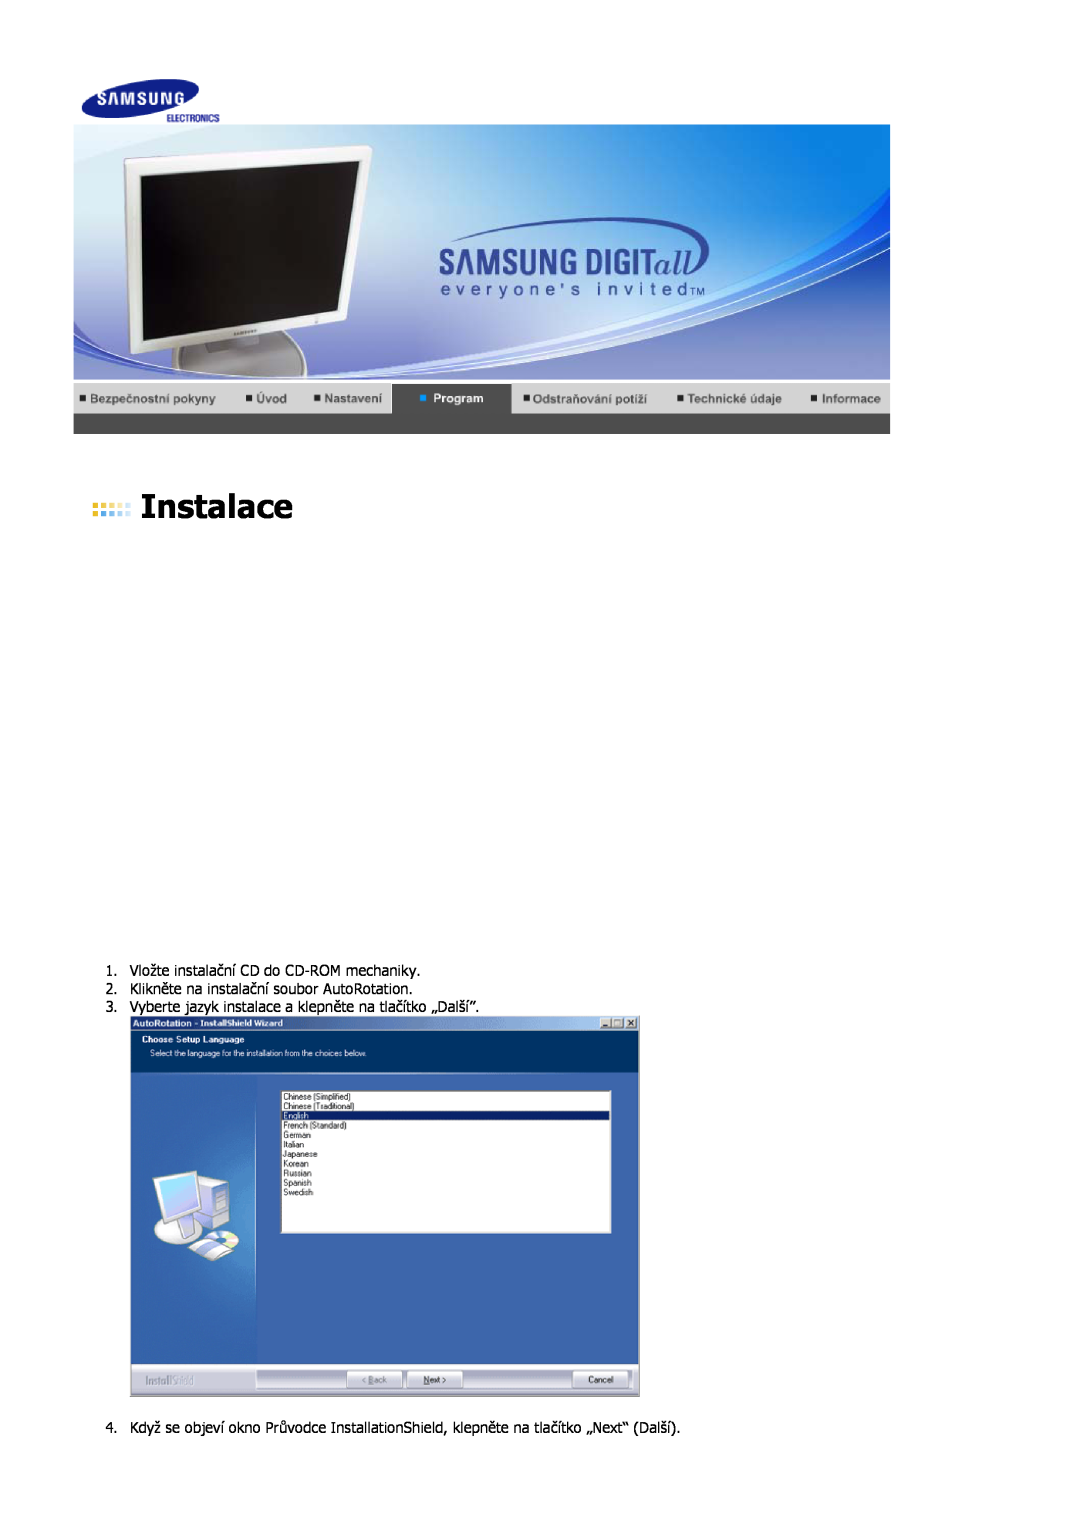 Samsung LS19HJDQHV/EDC Instalace, Vložte instalační CD do CD-ROM mechaniky, Klikněte na instalační soubor AutoRotation 